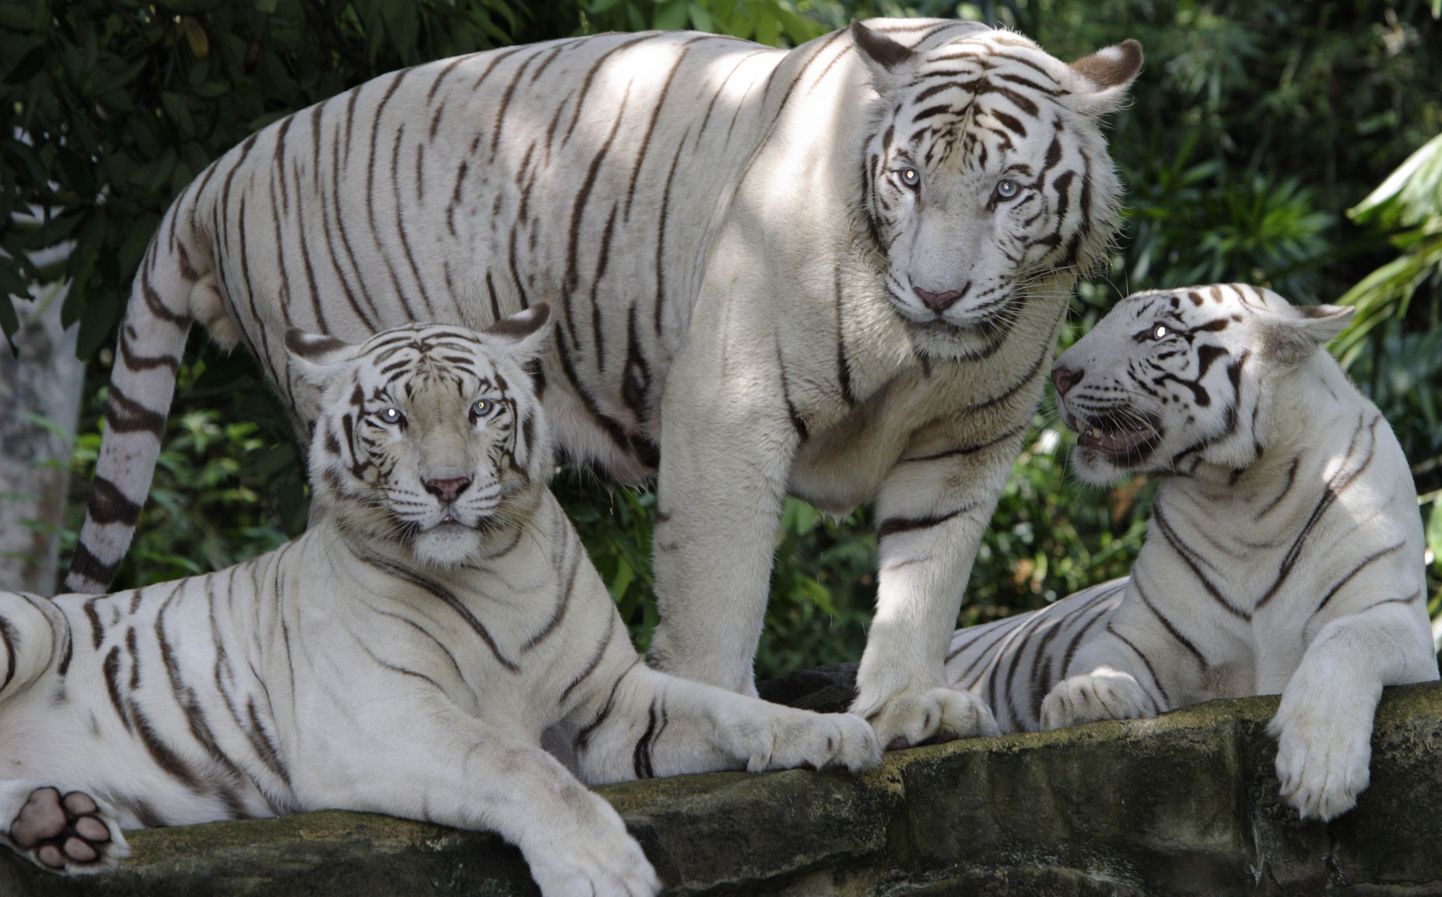 Pildil olevad valged tiigrid elavad Singapuri loomaaias.